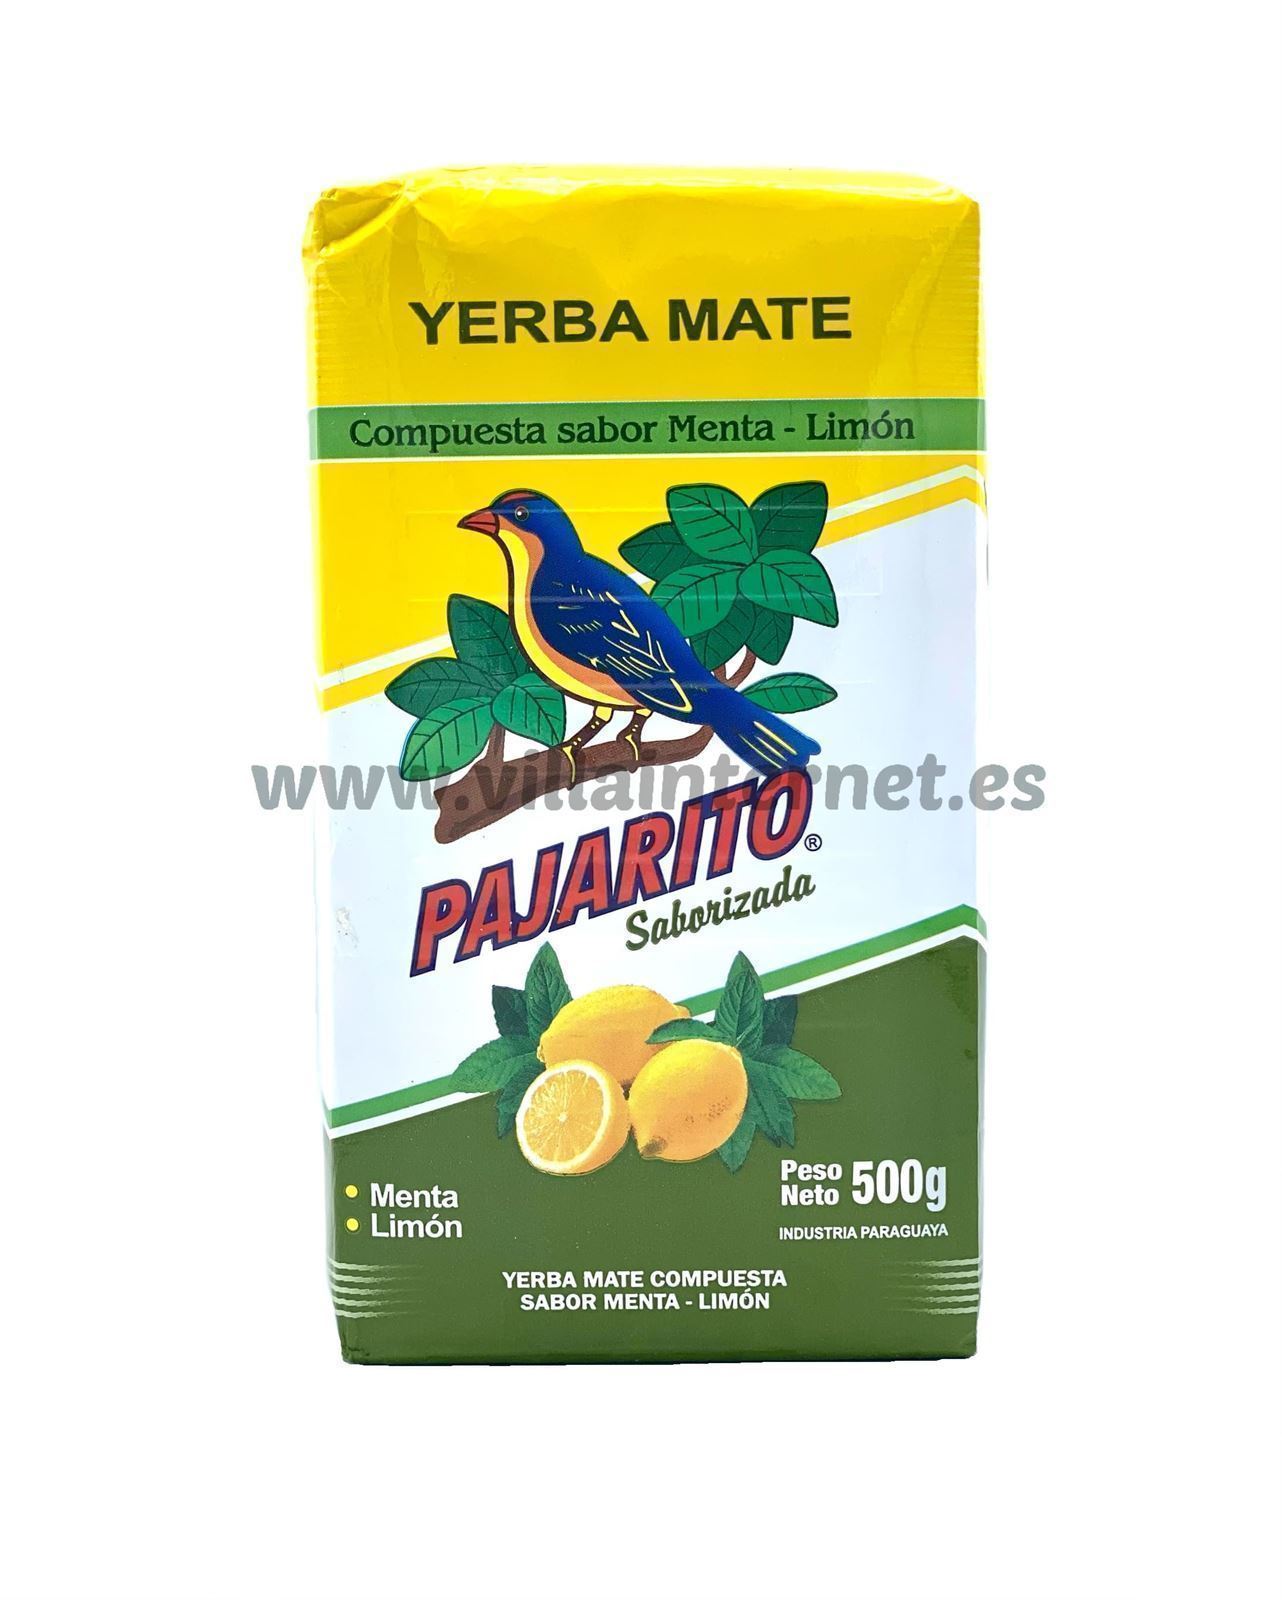 Yerba mate Pajarito menta y limón 500g - Imagen 1